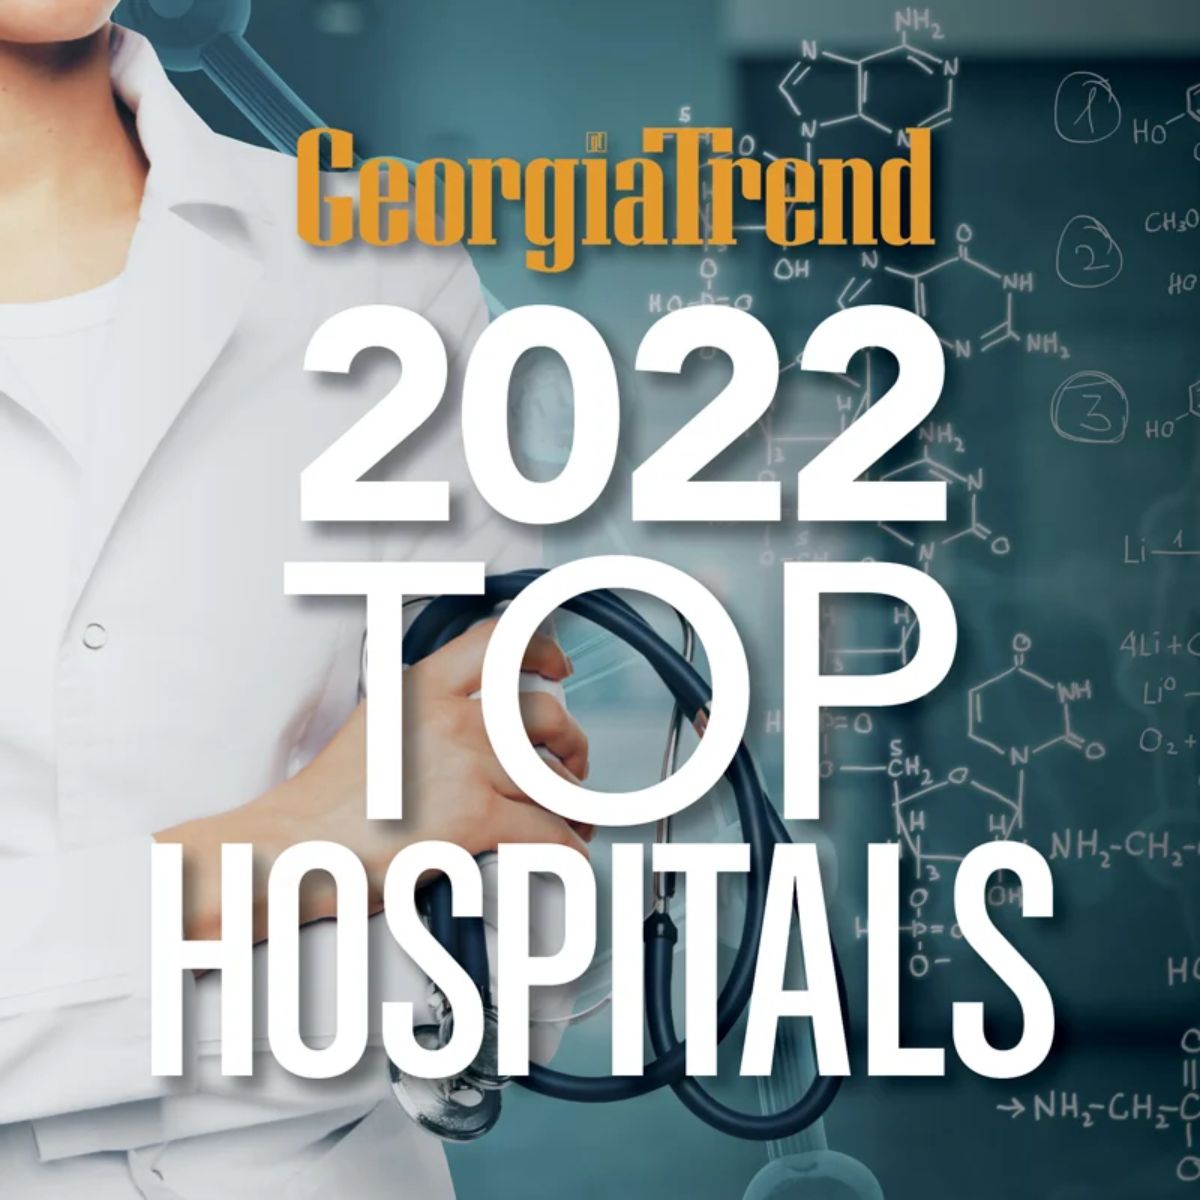 Georgia trent top hospitals graphic